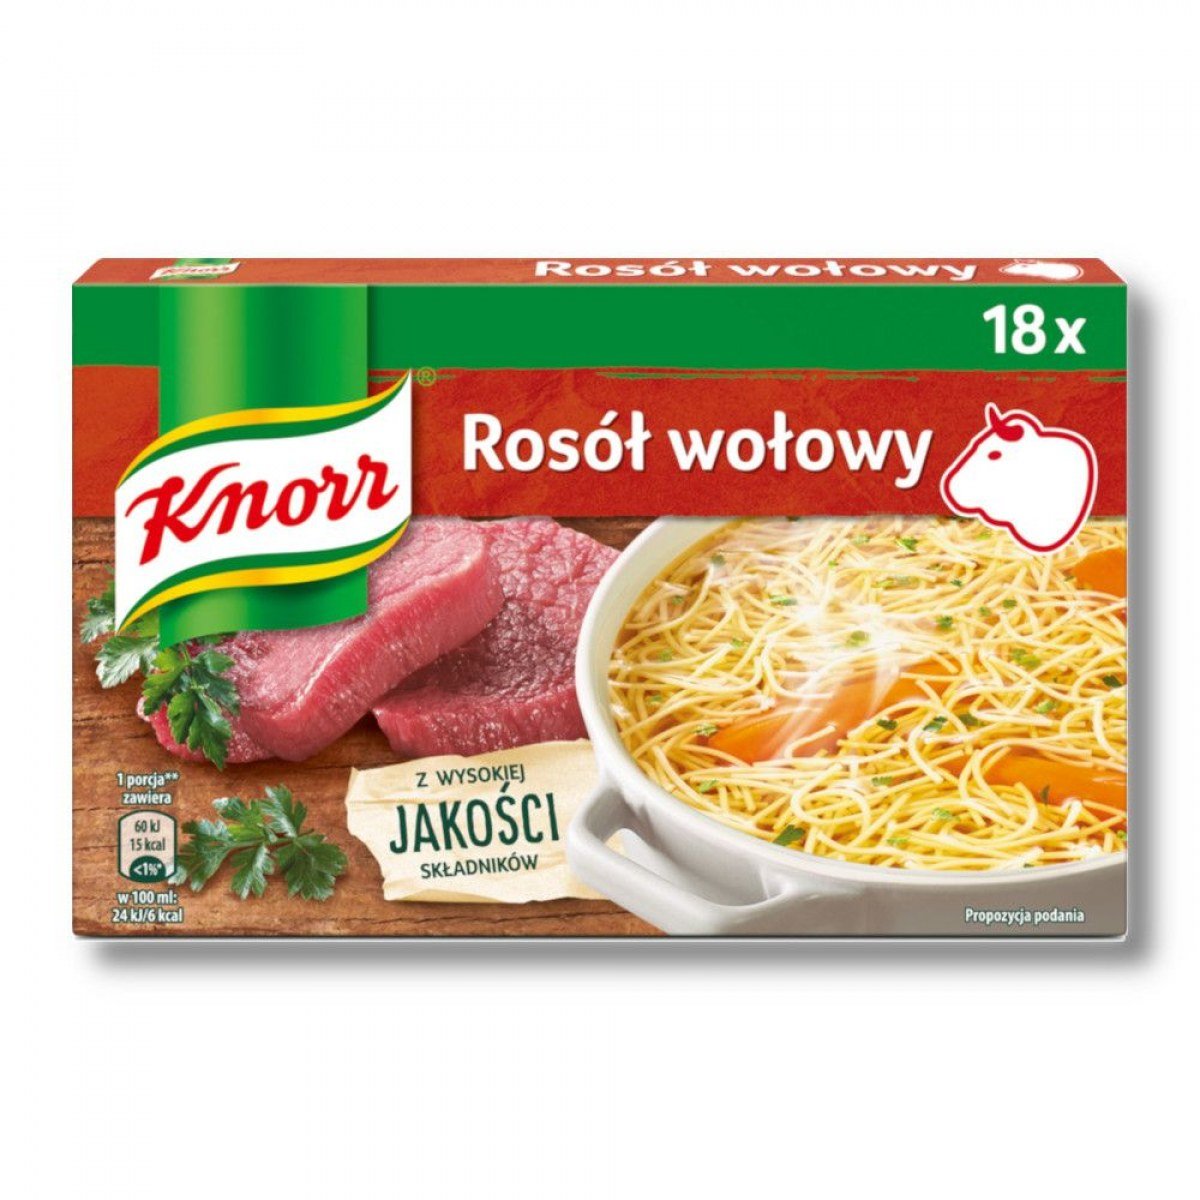 Knorr Rosół wołowy 18 x 10 g